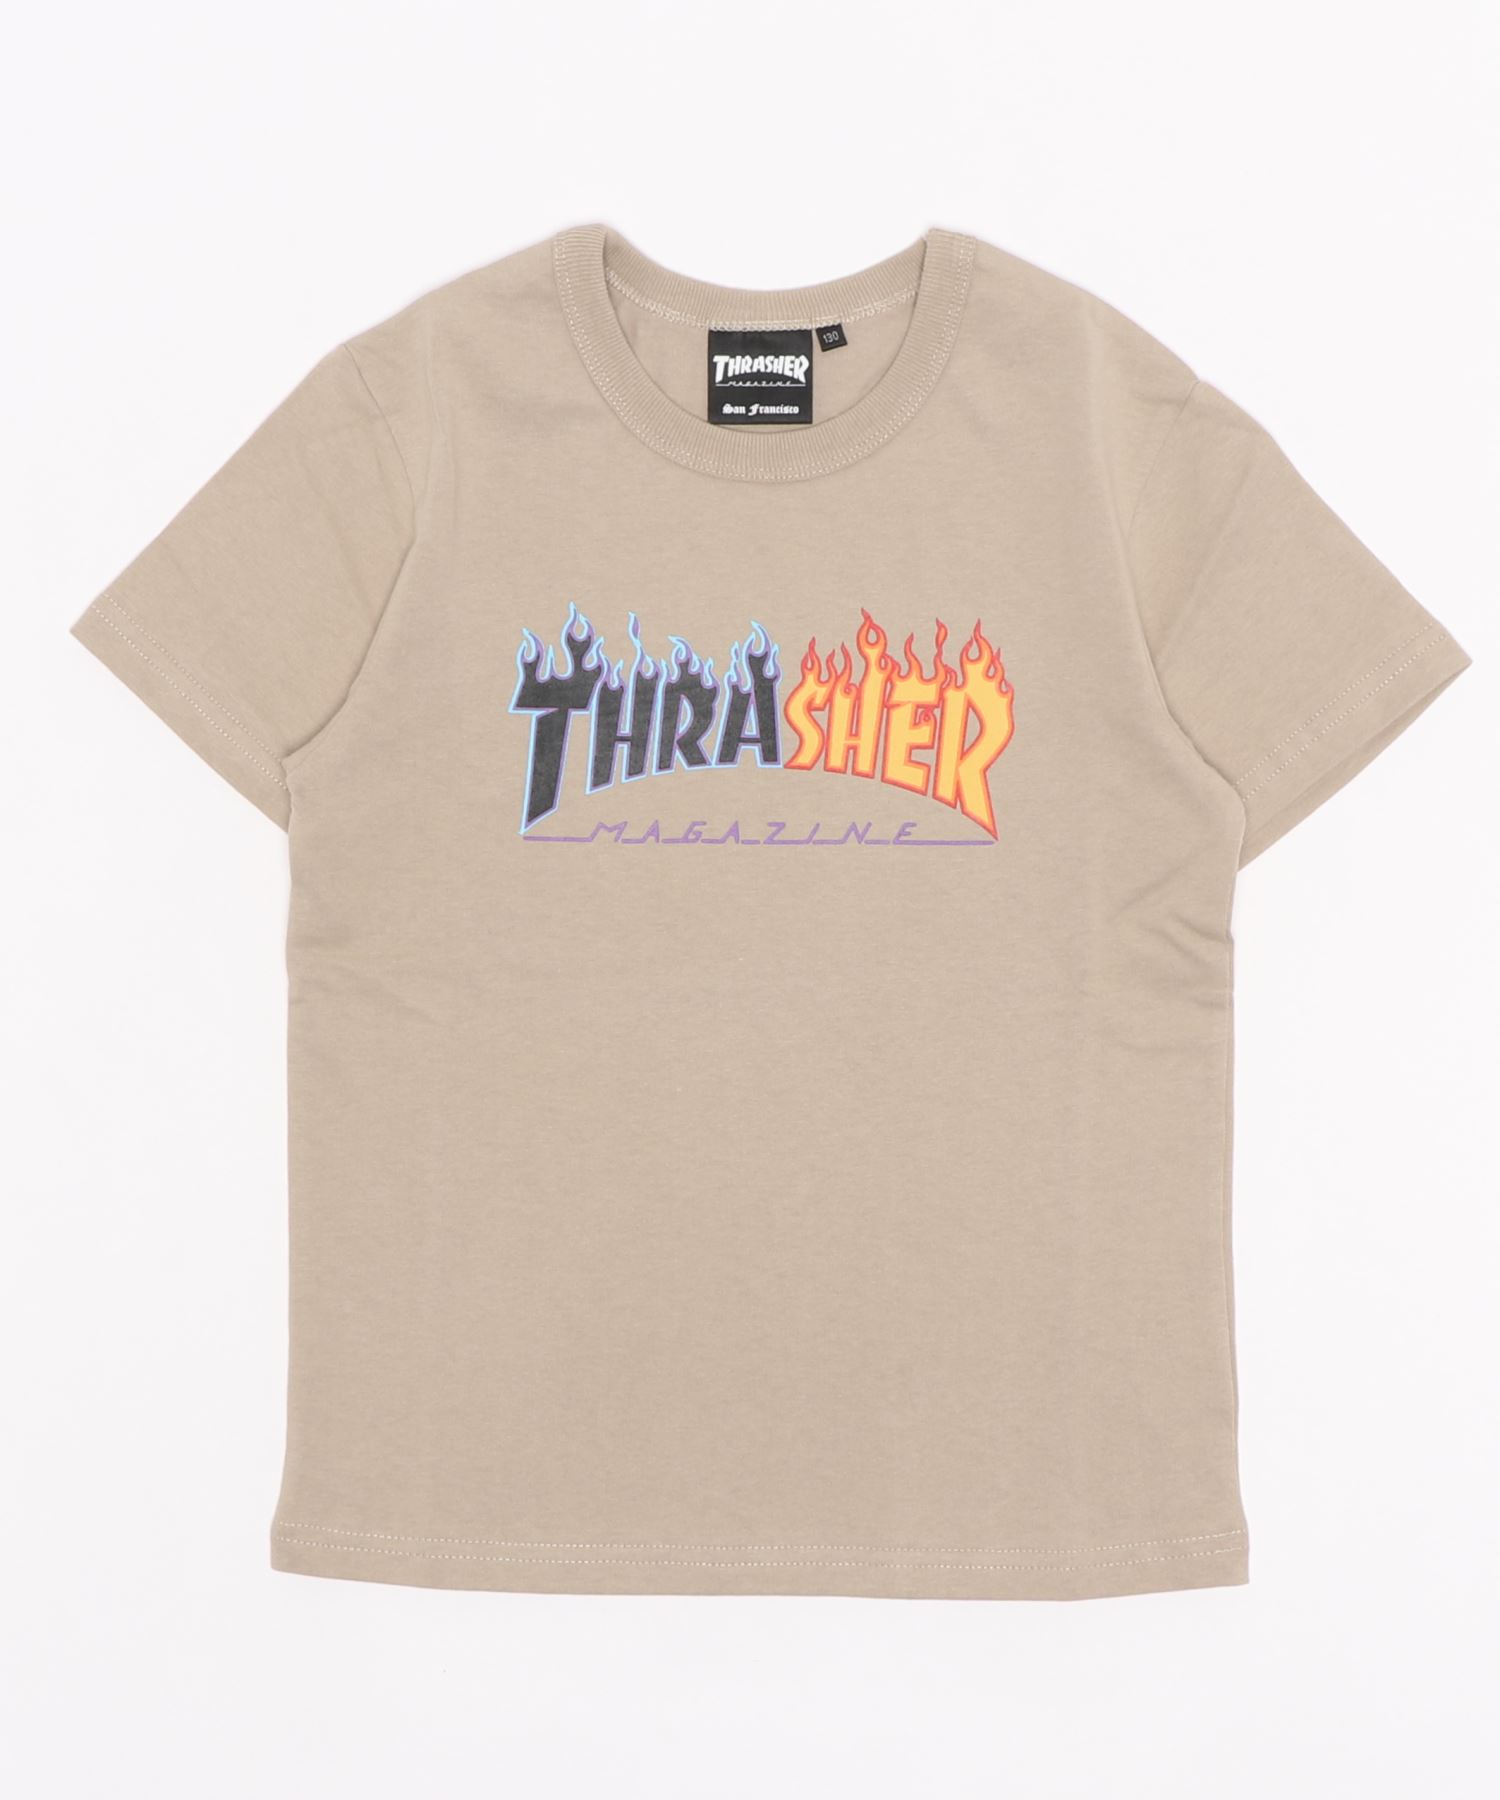 セール特価品 THRASHERSPLIT FLAME YOUTH T-SHIRTS S スラッシャーキッズ半袖Tシャツ 人気の定番